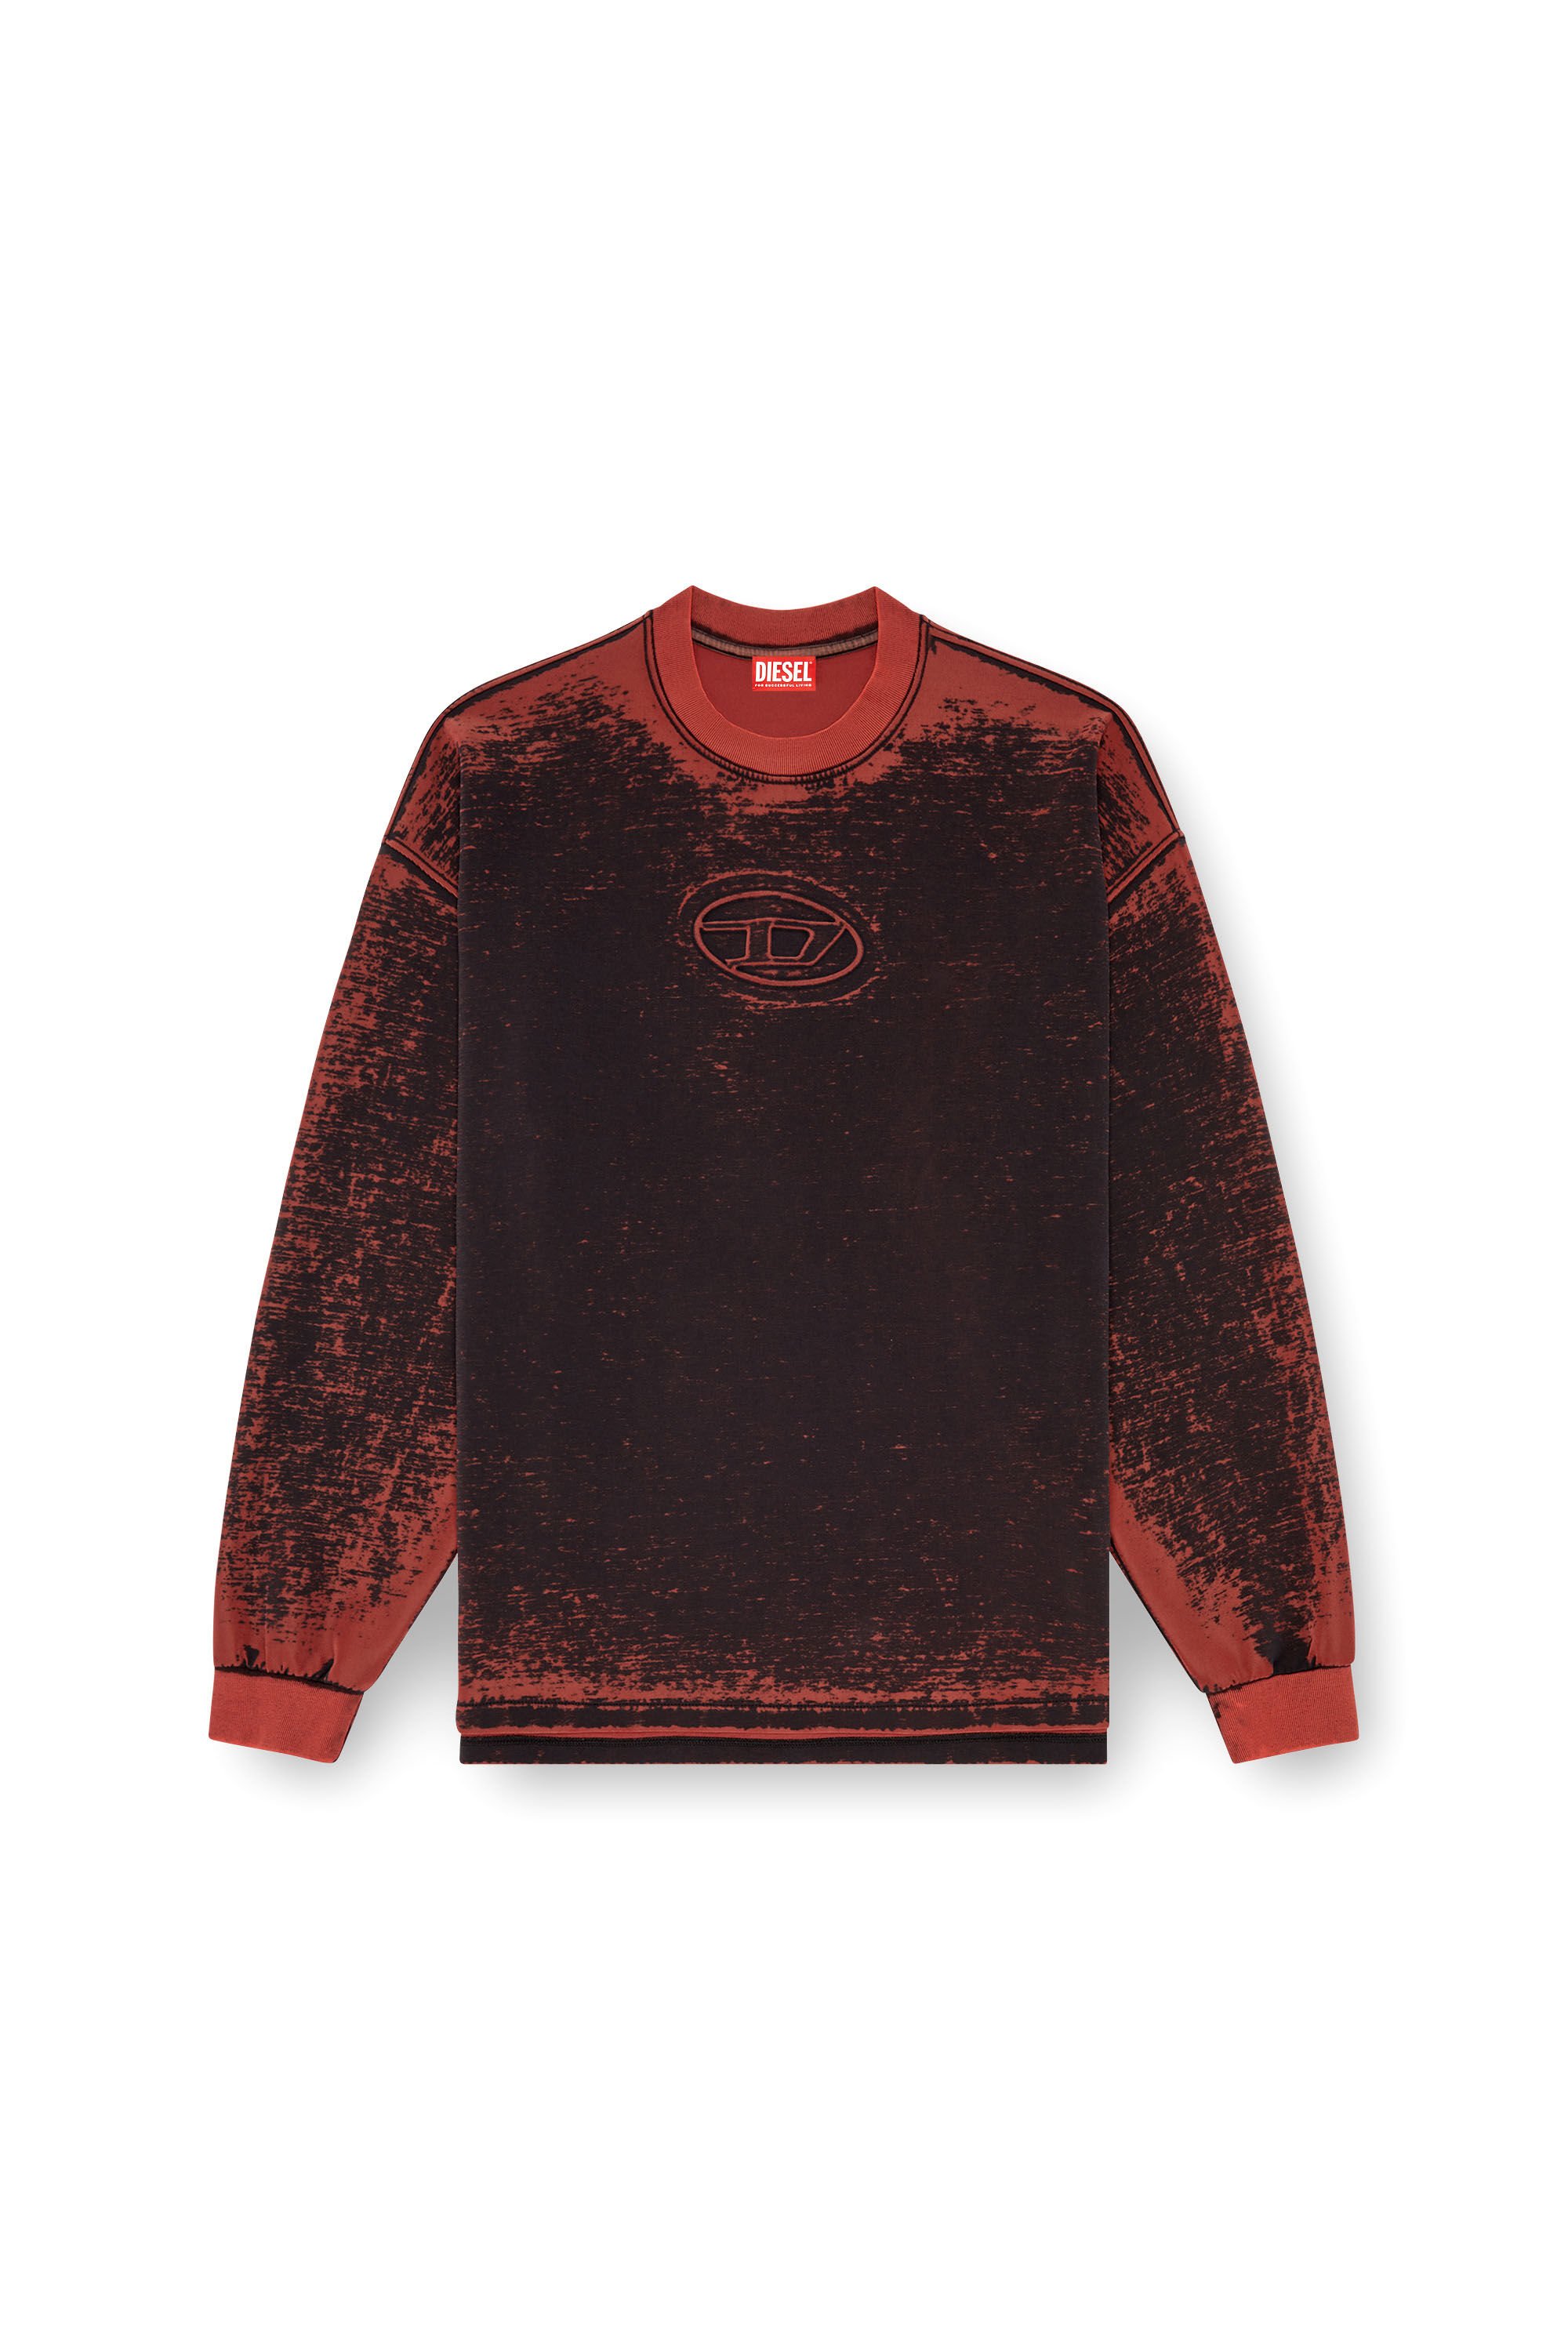 Diesel - S-BAXT-Q1, Homme Sweat-shirt découpé avec Oval D embossé in Rouge - Image 2